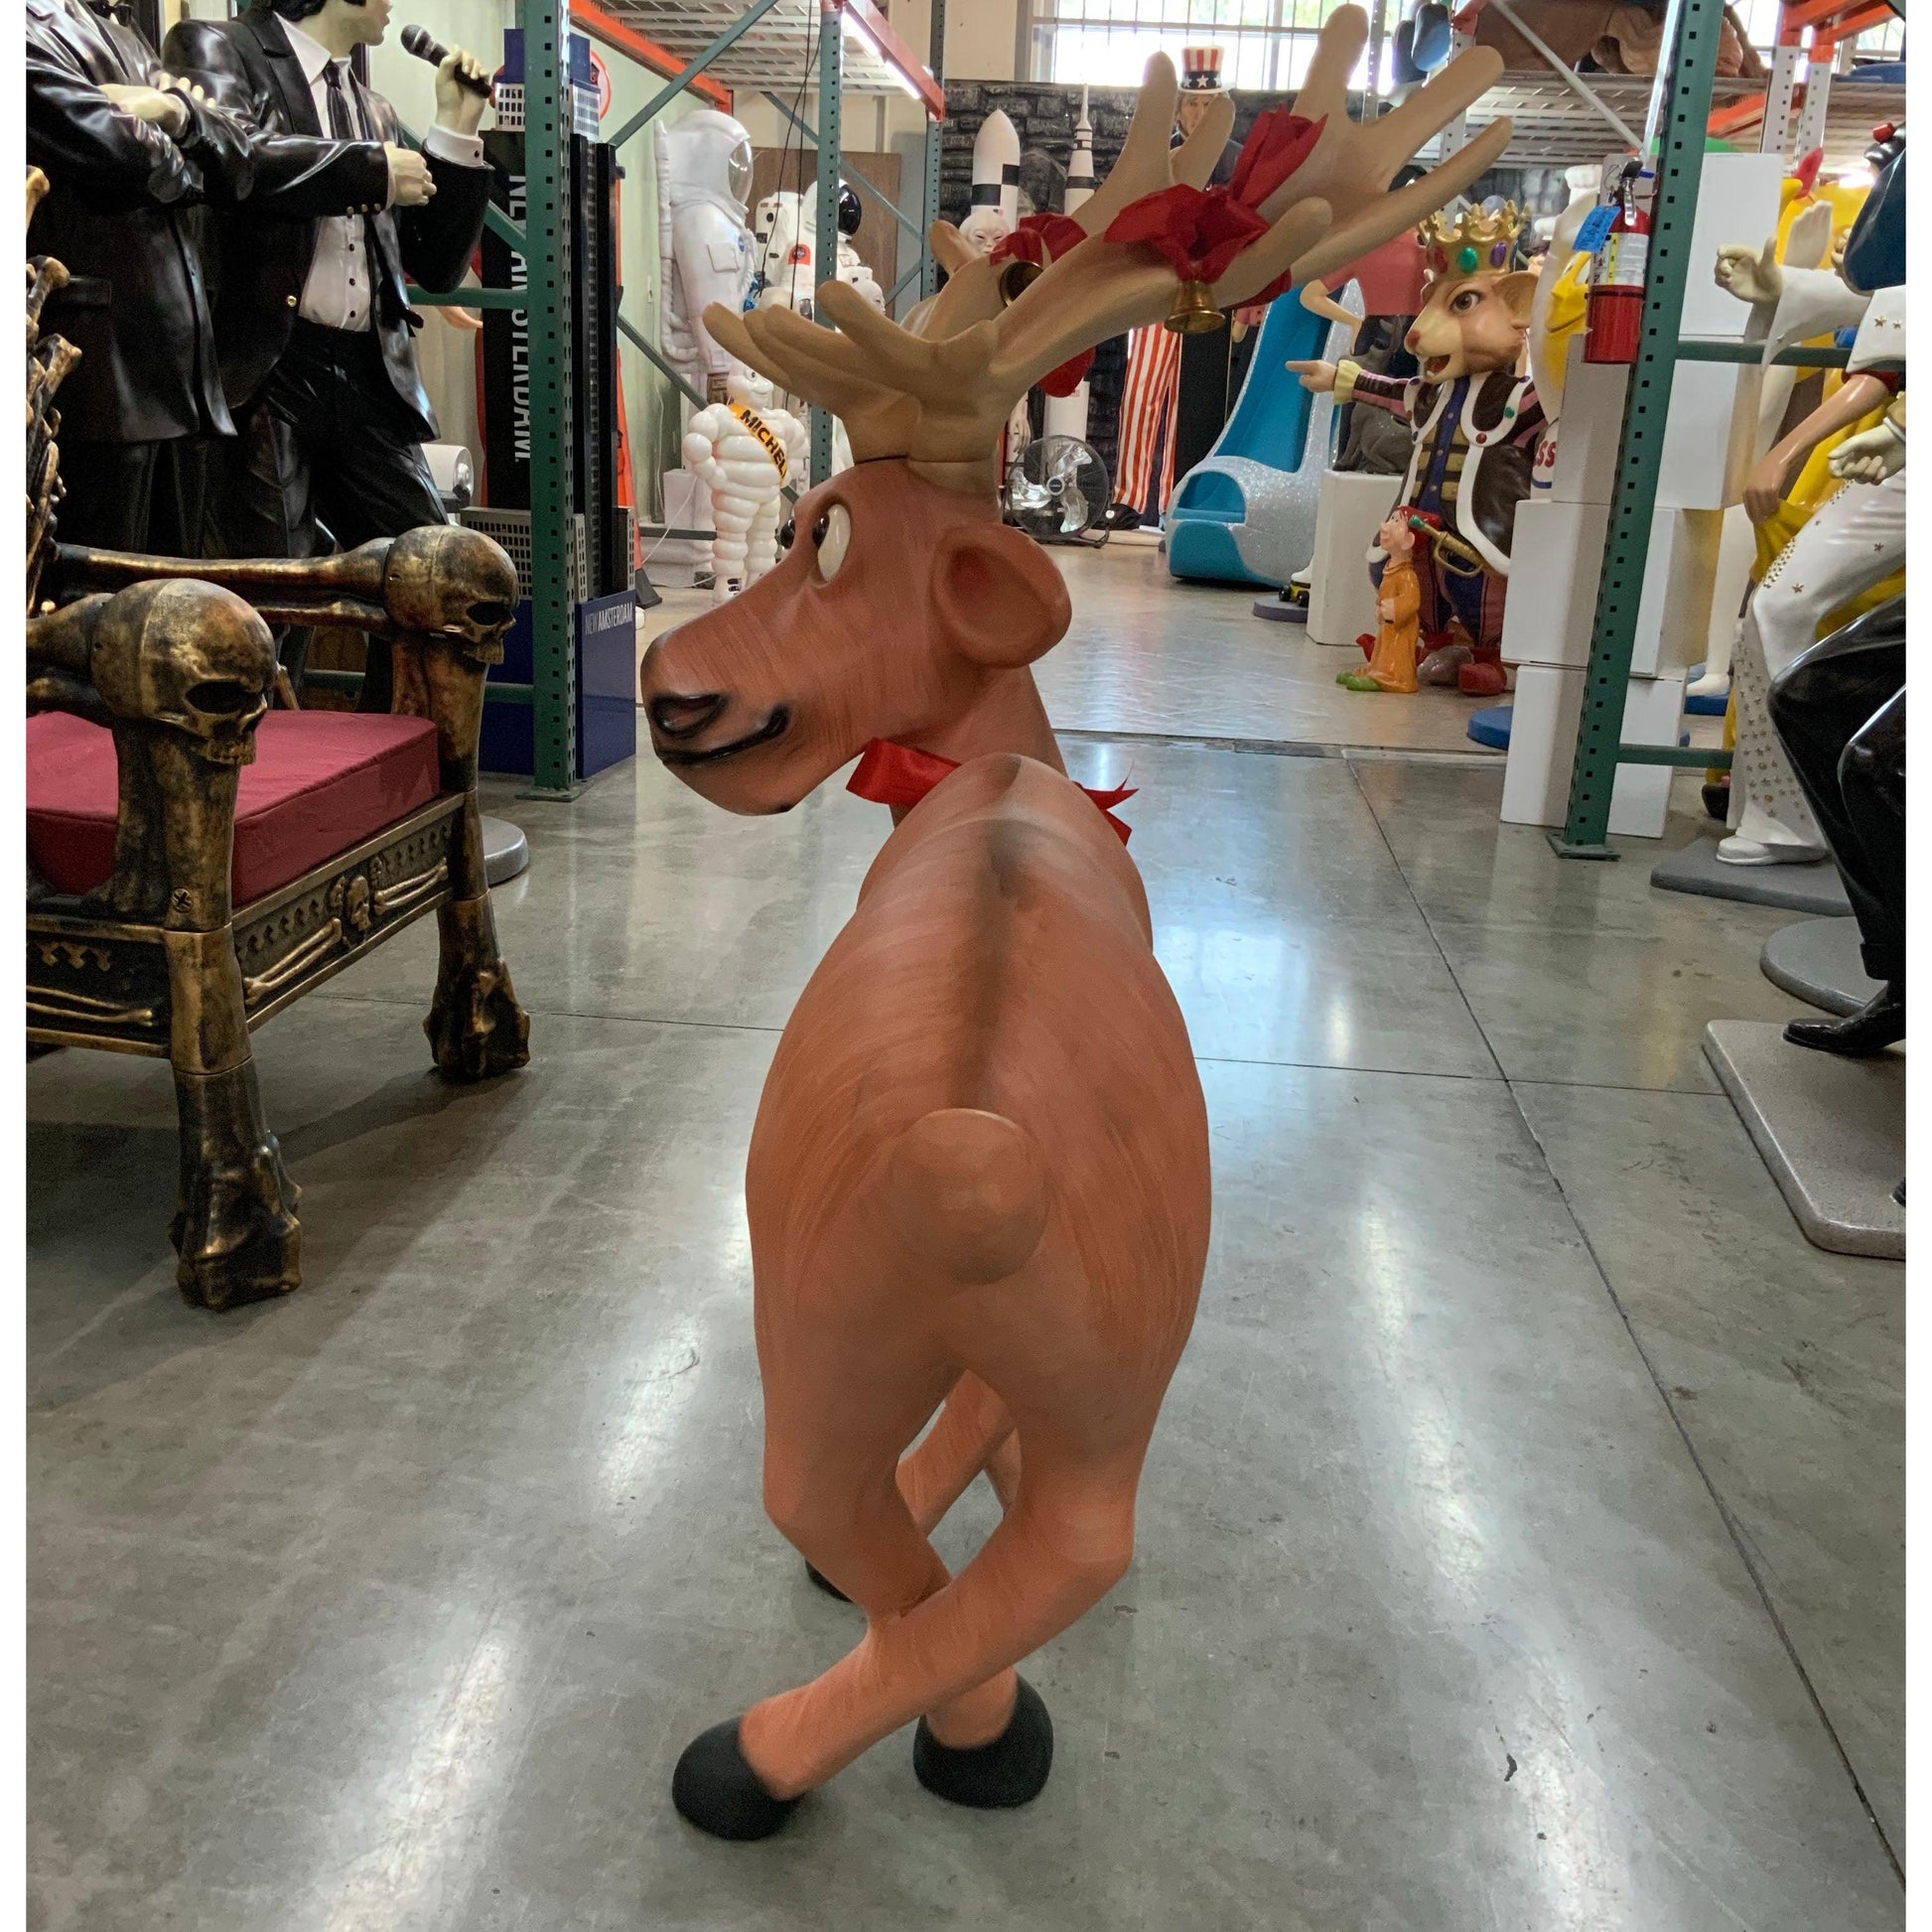 Tangled Standing Funny Reindeer Statue - LM Treasures Prop Rentals 